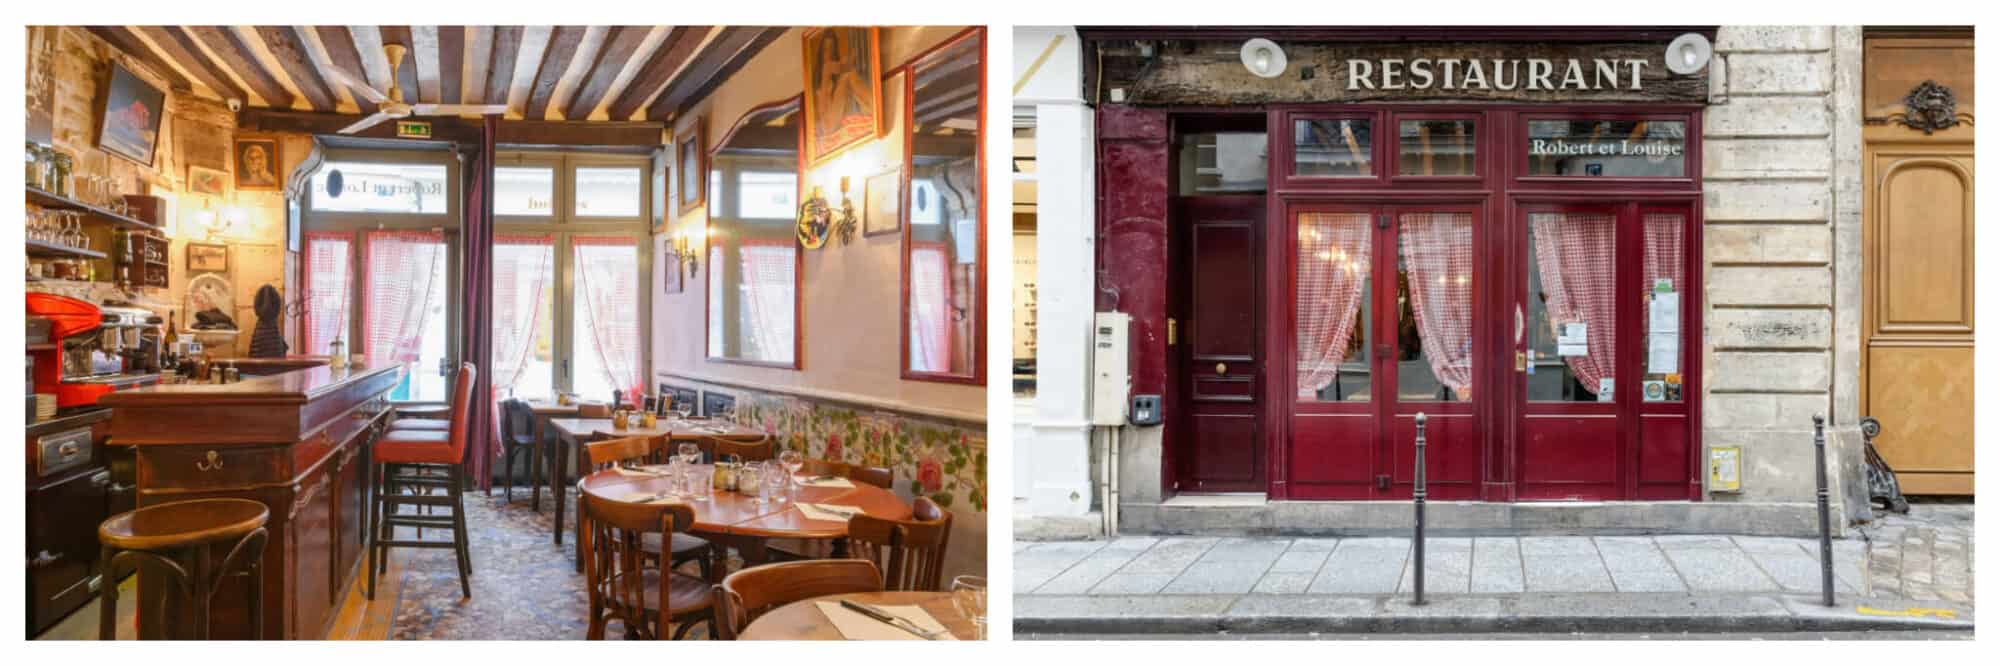 Left: The inside of the quaint Parisian café Robert et Louise in the Marais in Paris, Right: Left: The exterior of the quaint Parisian café Robert et Louise in the Marais in Paris